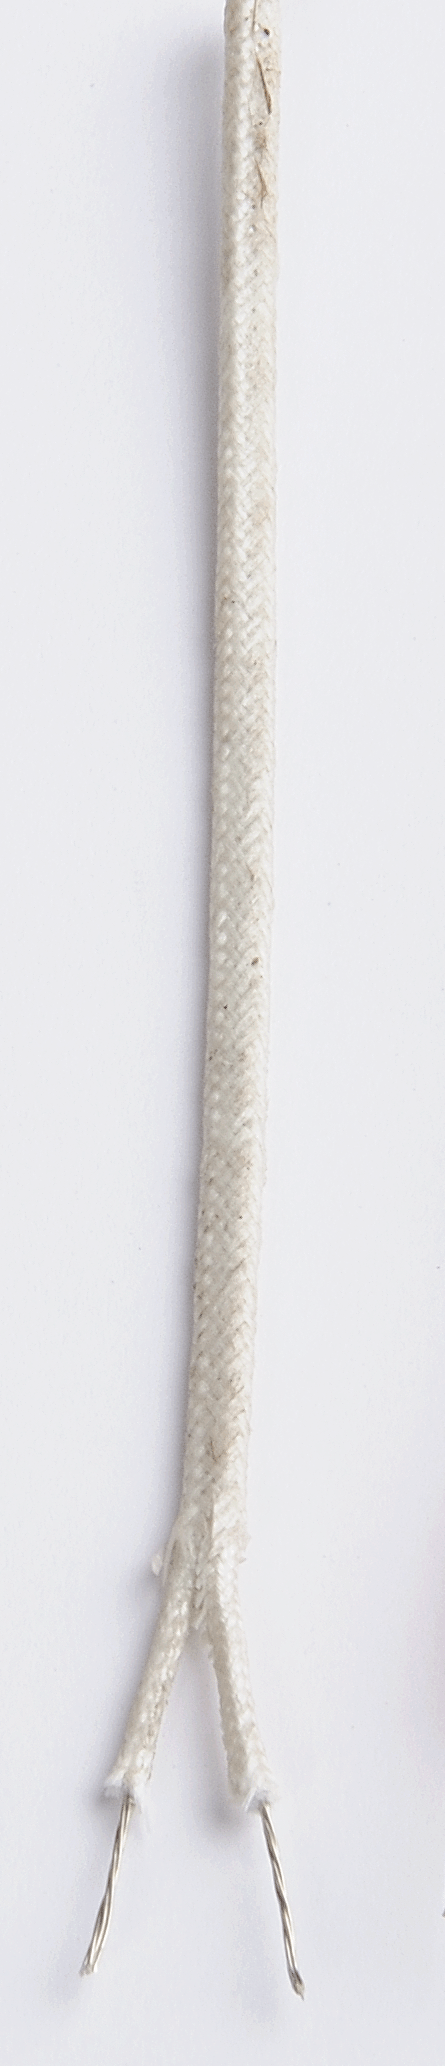 ceramic fibre thermocouple wire